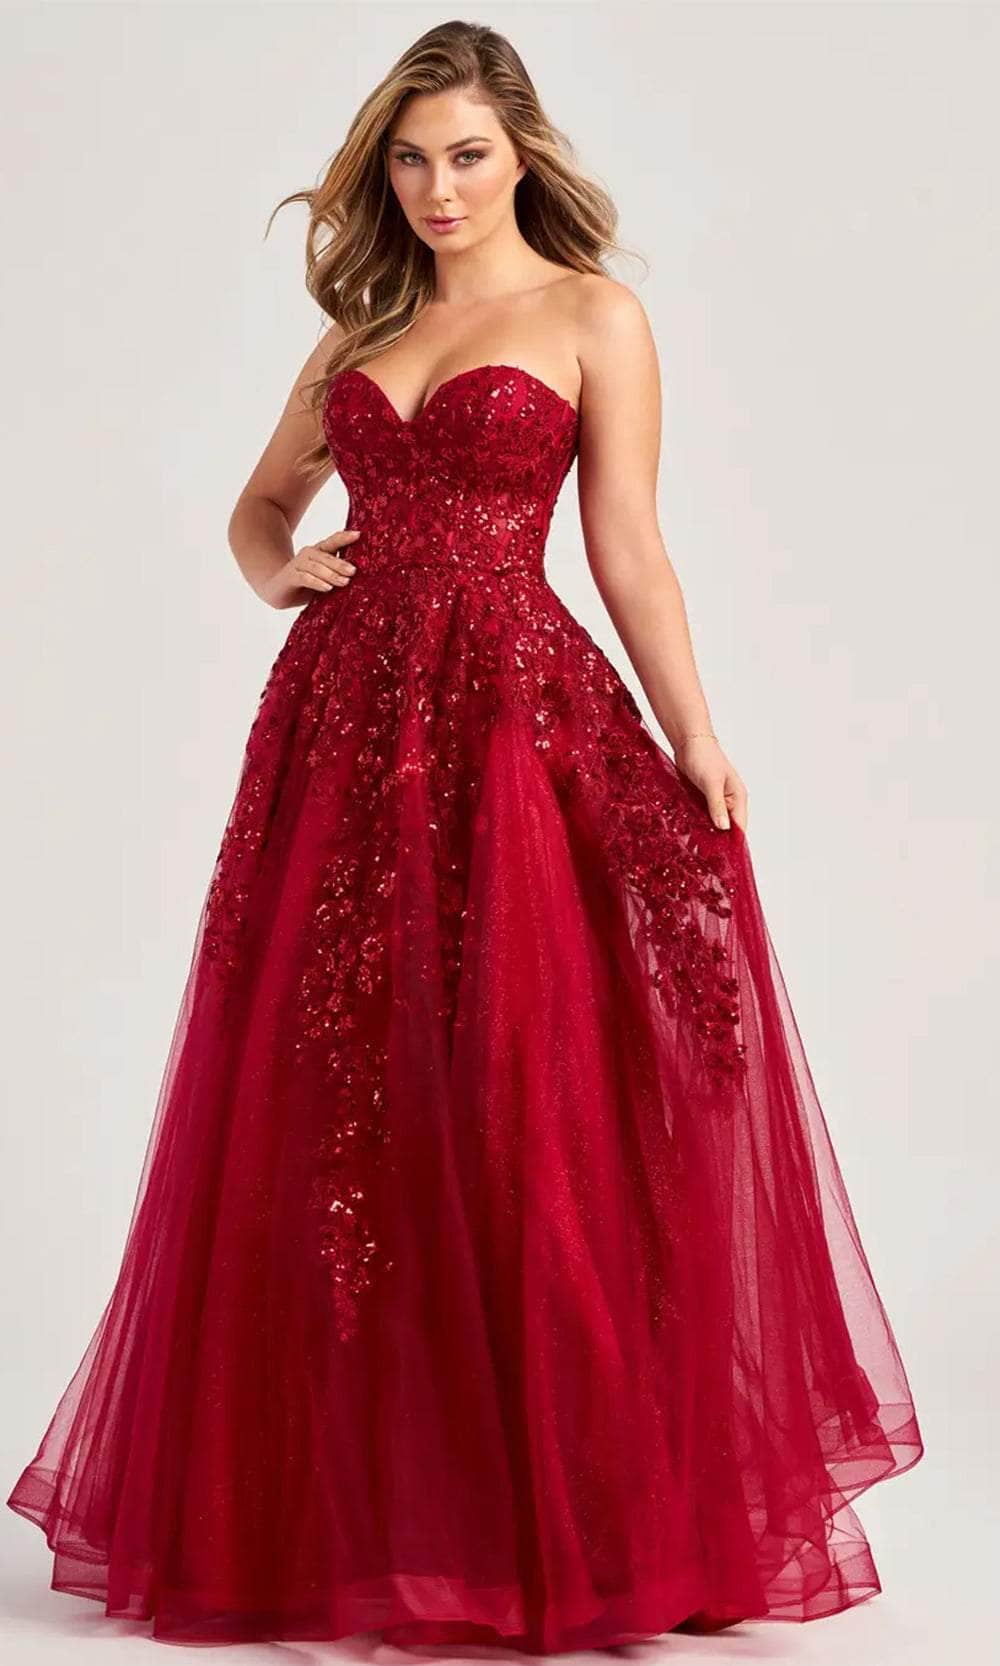 Image of Colette By Daphne CL5136 - Lace Applique Corset Prom Dress